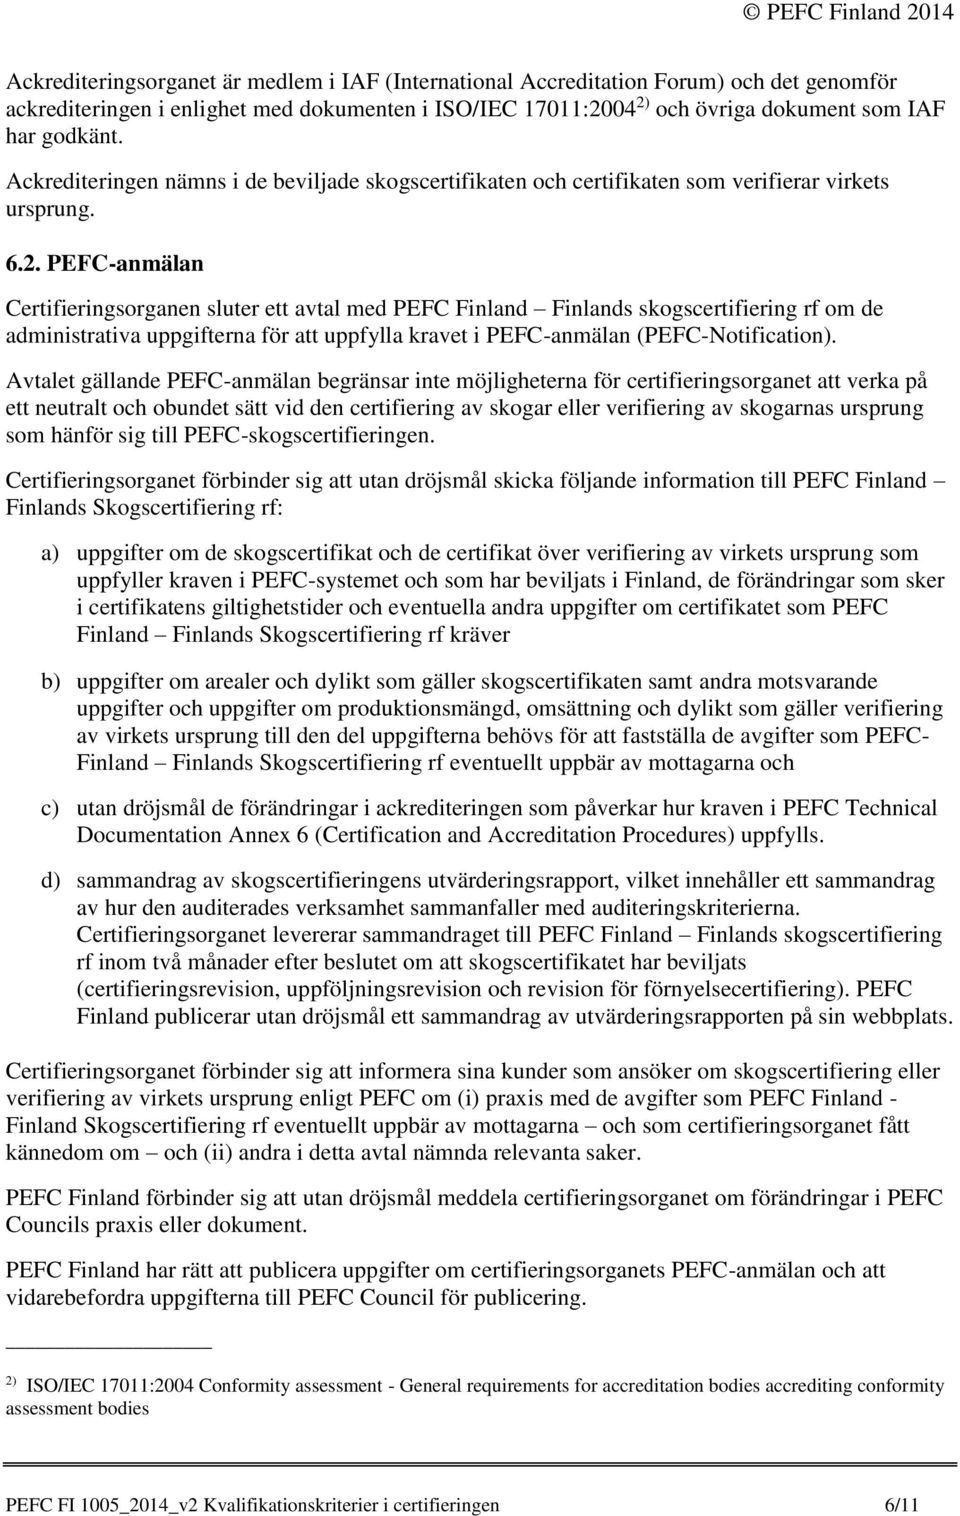 PEFC-anmälan Certifieringsorganen sluter ett avtal med PEFC Finland Finlands skogscertifiering rf om de administrativa uppgifterna för att uppfylla kravet i PEFC-anmälan (PEFC-Notification).